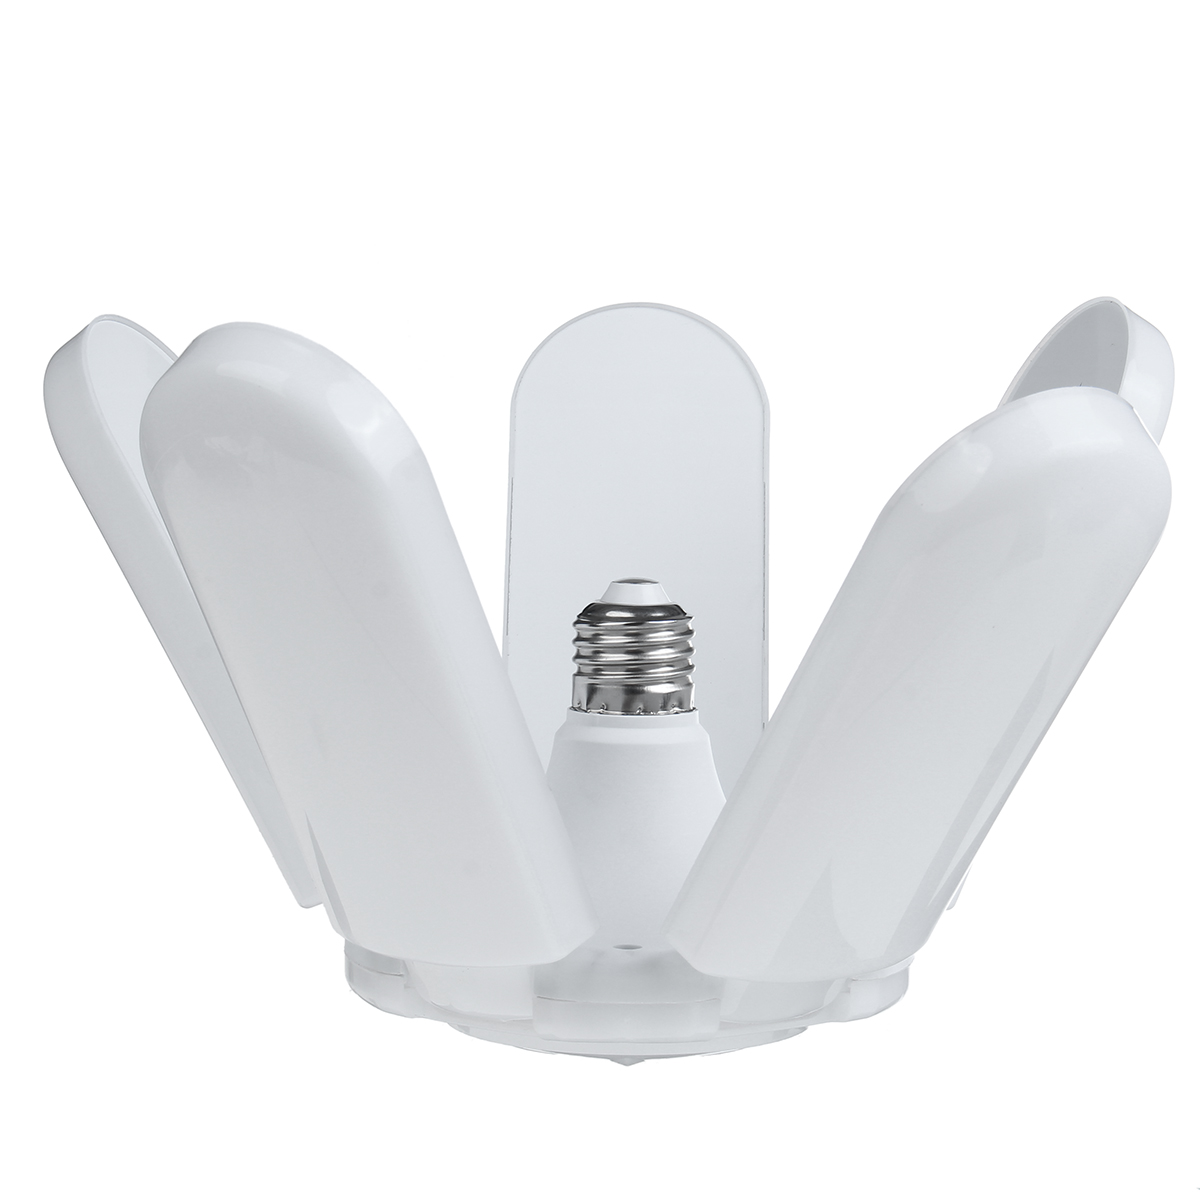 23451-Blades-E27-LED-Garage-Light-Foldable-Indoor-Bulb-Deformable-Shop-Ceiling-Lamp-AC85-265V-1667024-10